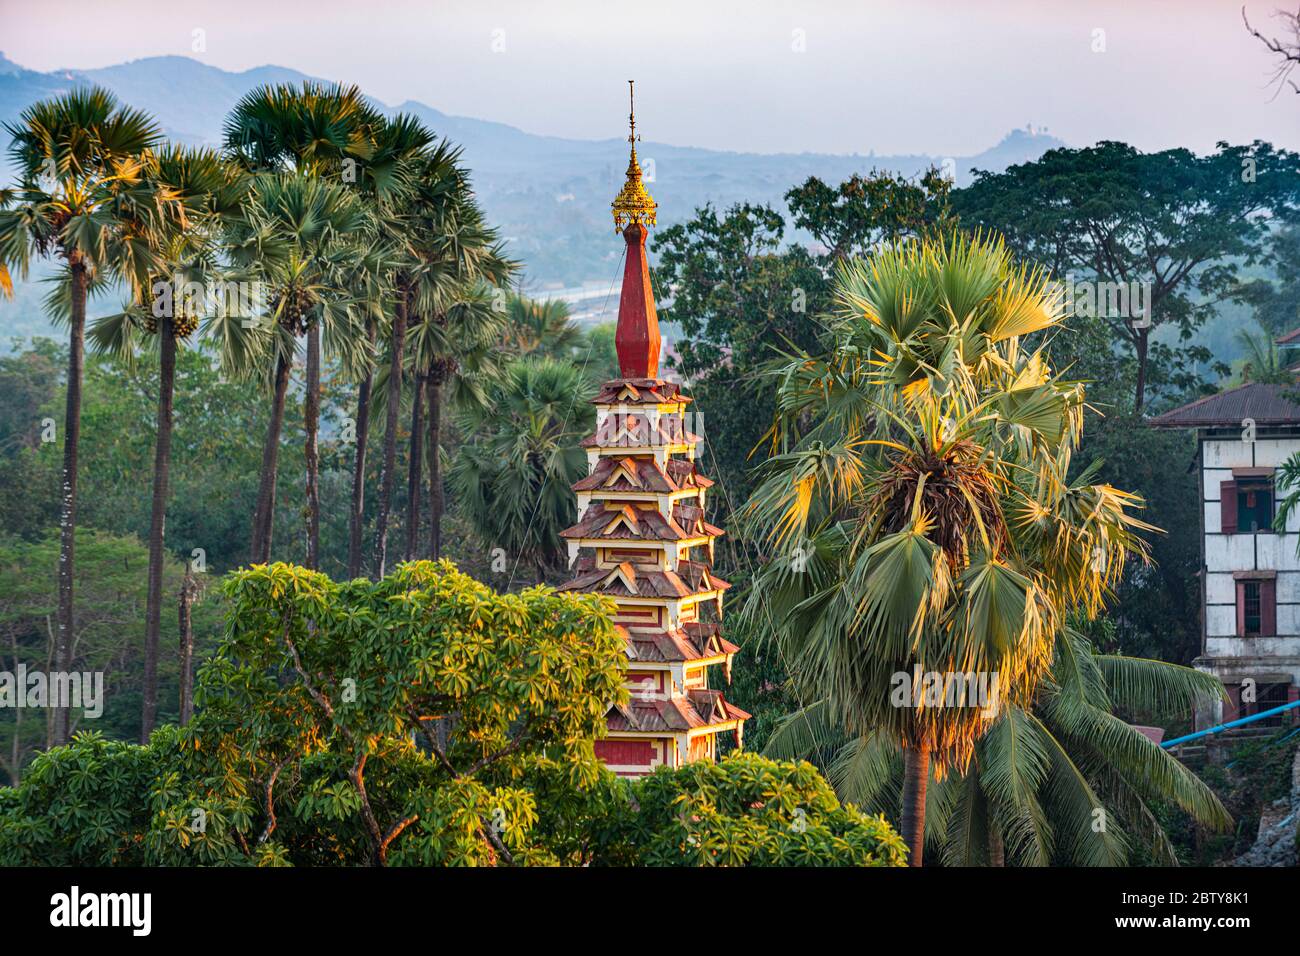 Haut d'une pagode s'élève hors de la forêt, Kyaikthanian paya, Mawlamyine, mon état, Myanmar (Birmanie), Asie Banque D'Images